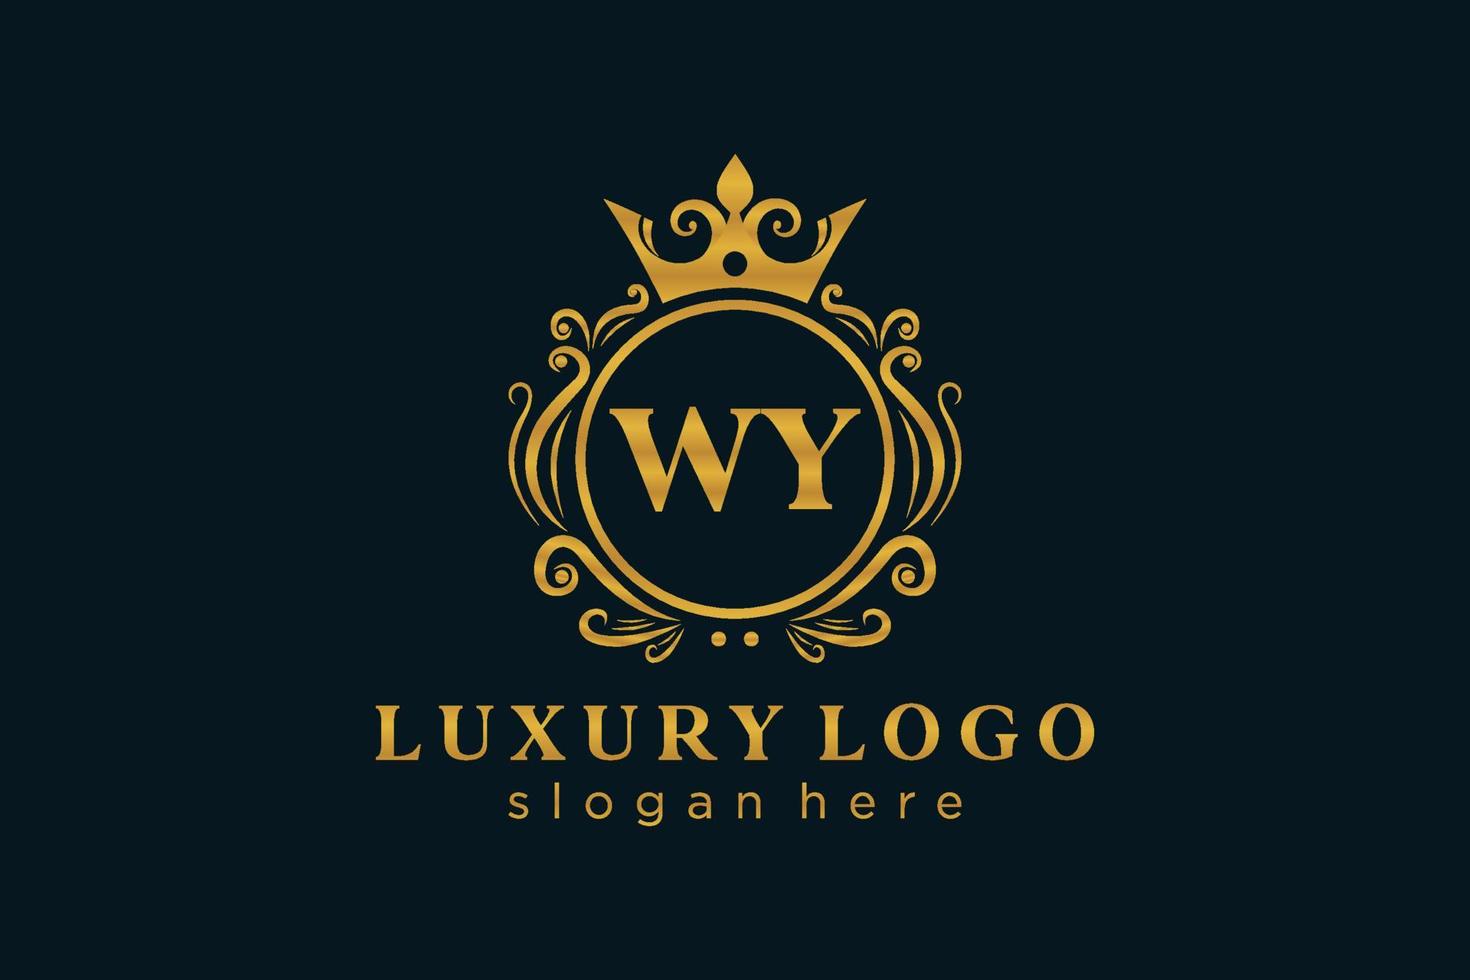 plantilla de logotipo de lujo real con letra wy inicial en arte vectorial para restaurante, realeza, boutique, cafetería, hotel, heráldica, joyería, moda y otras ilustraciones vectoriales. vector